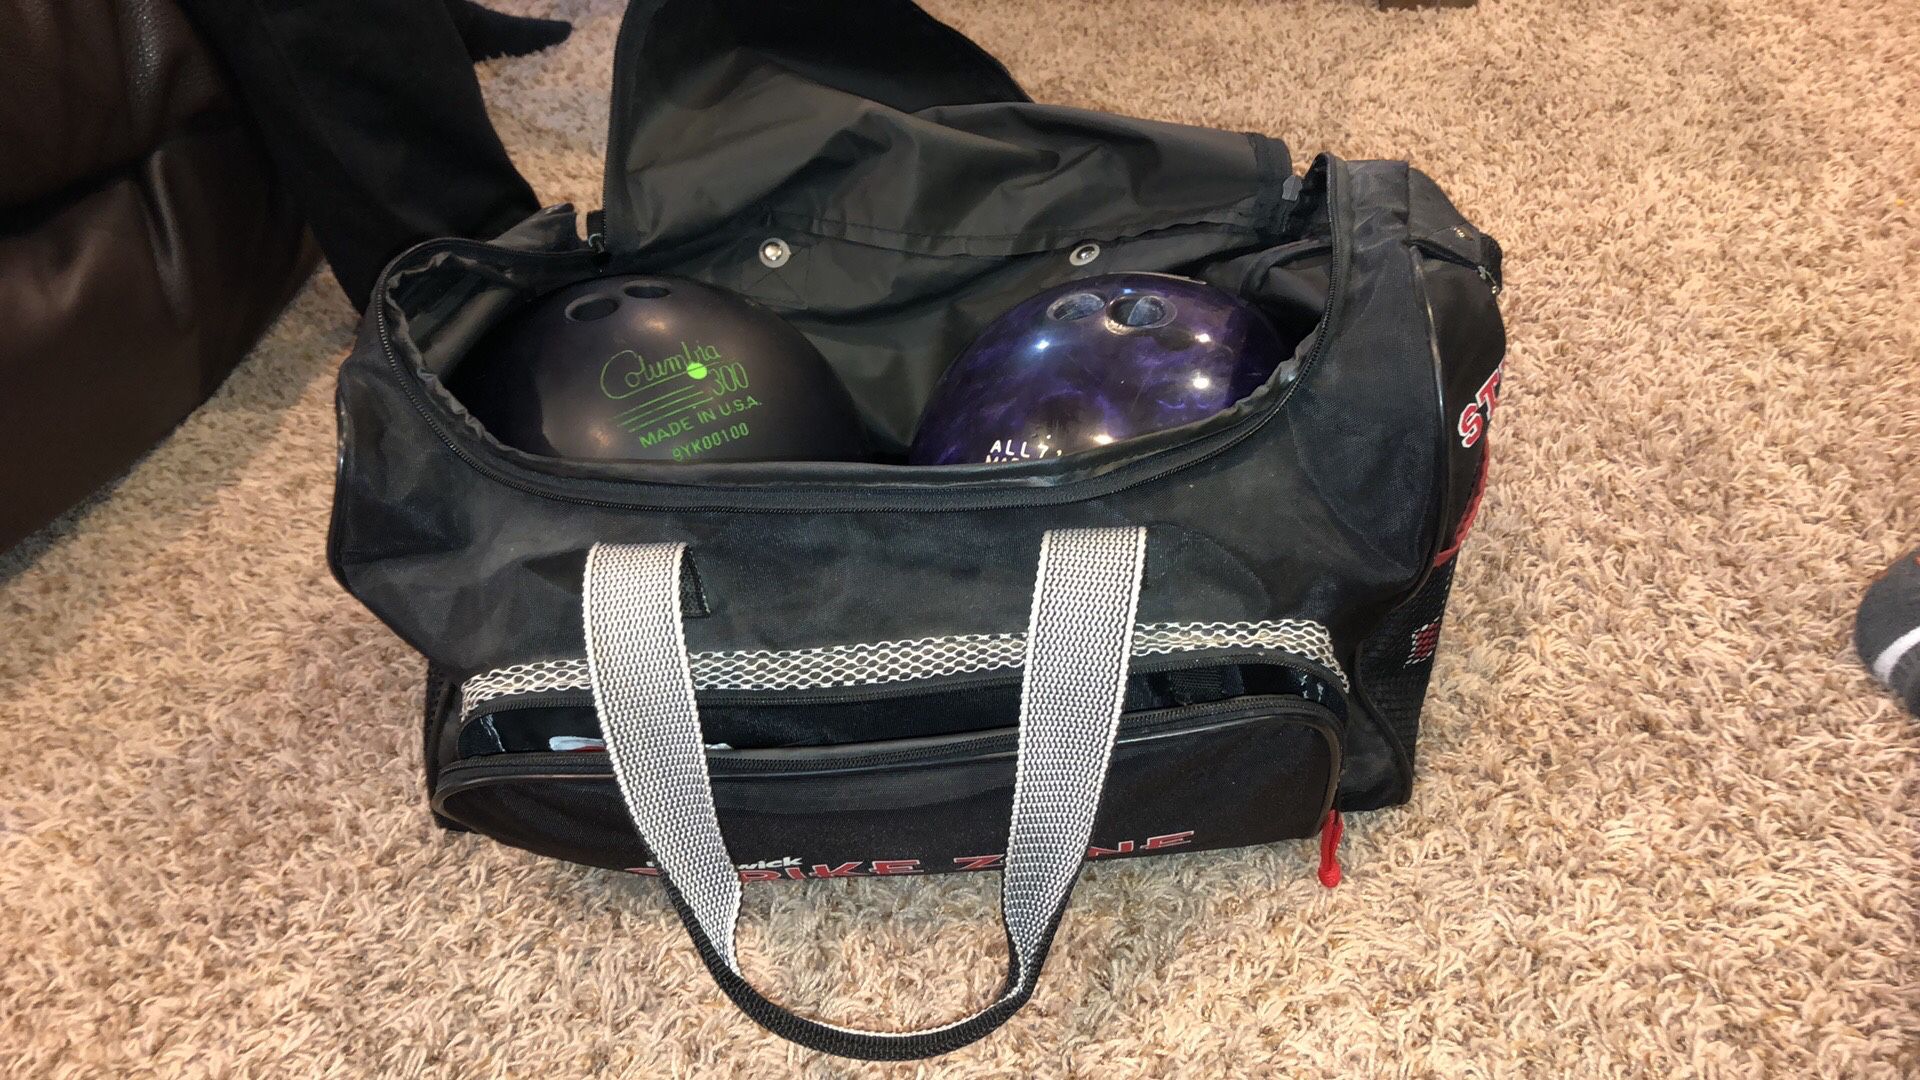 Bowling balls and bag